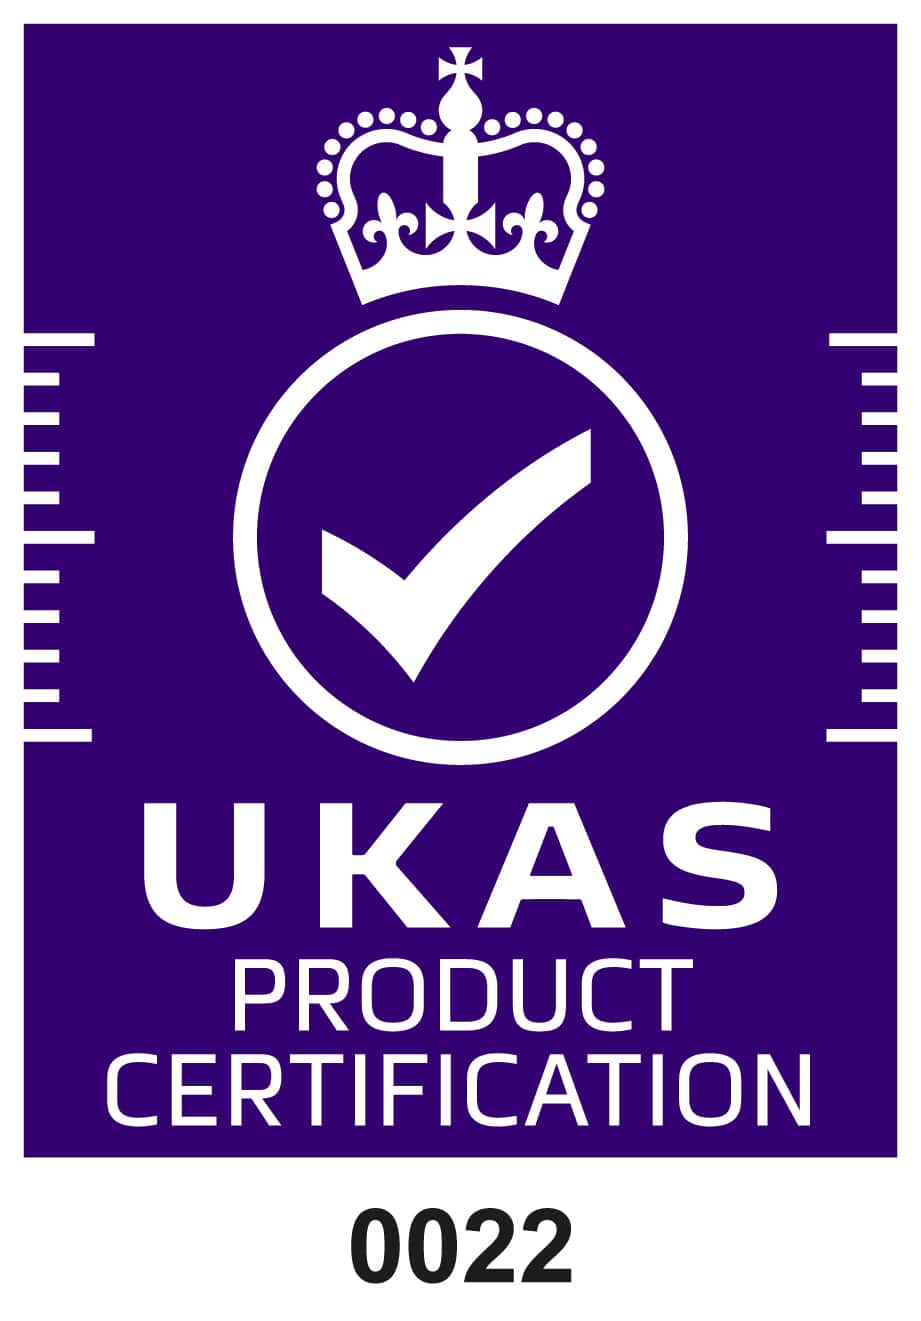 紫底白字的 Ukas 认证标志 产品认证